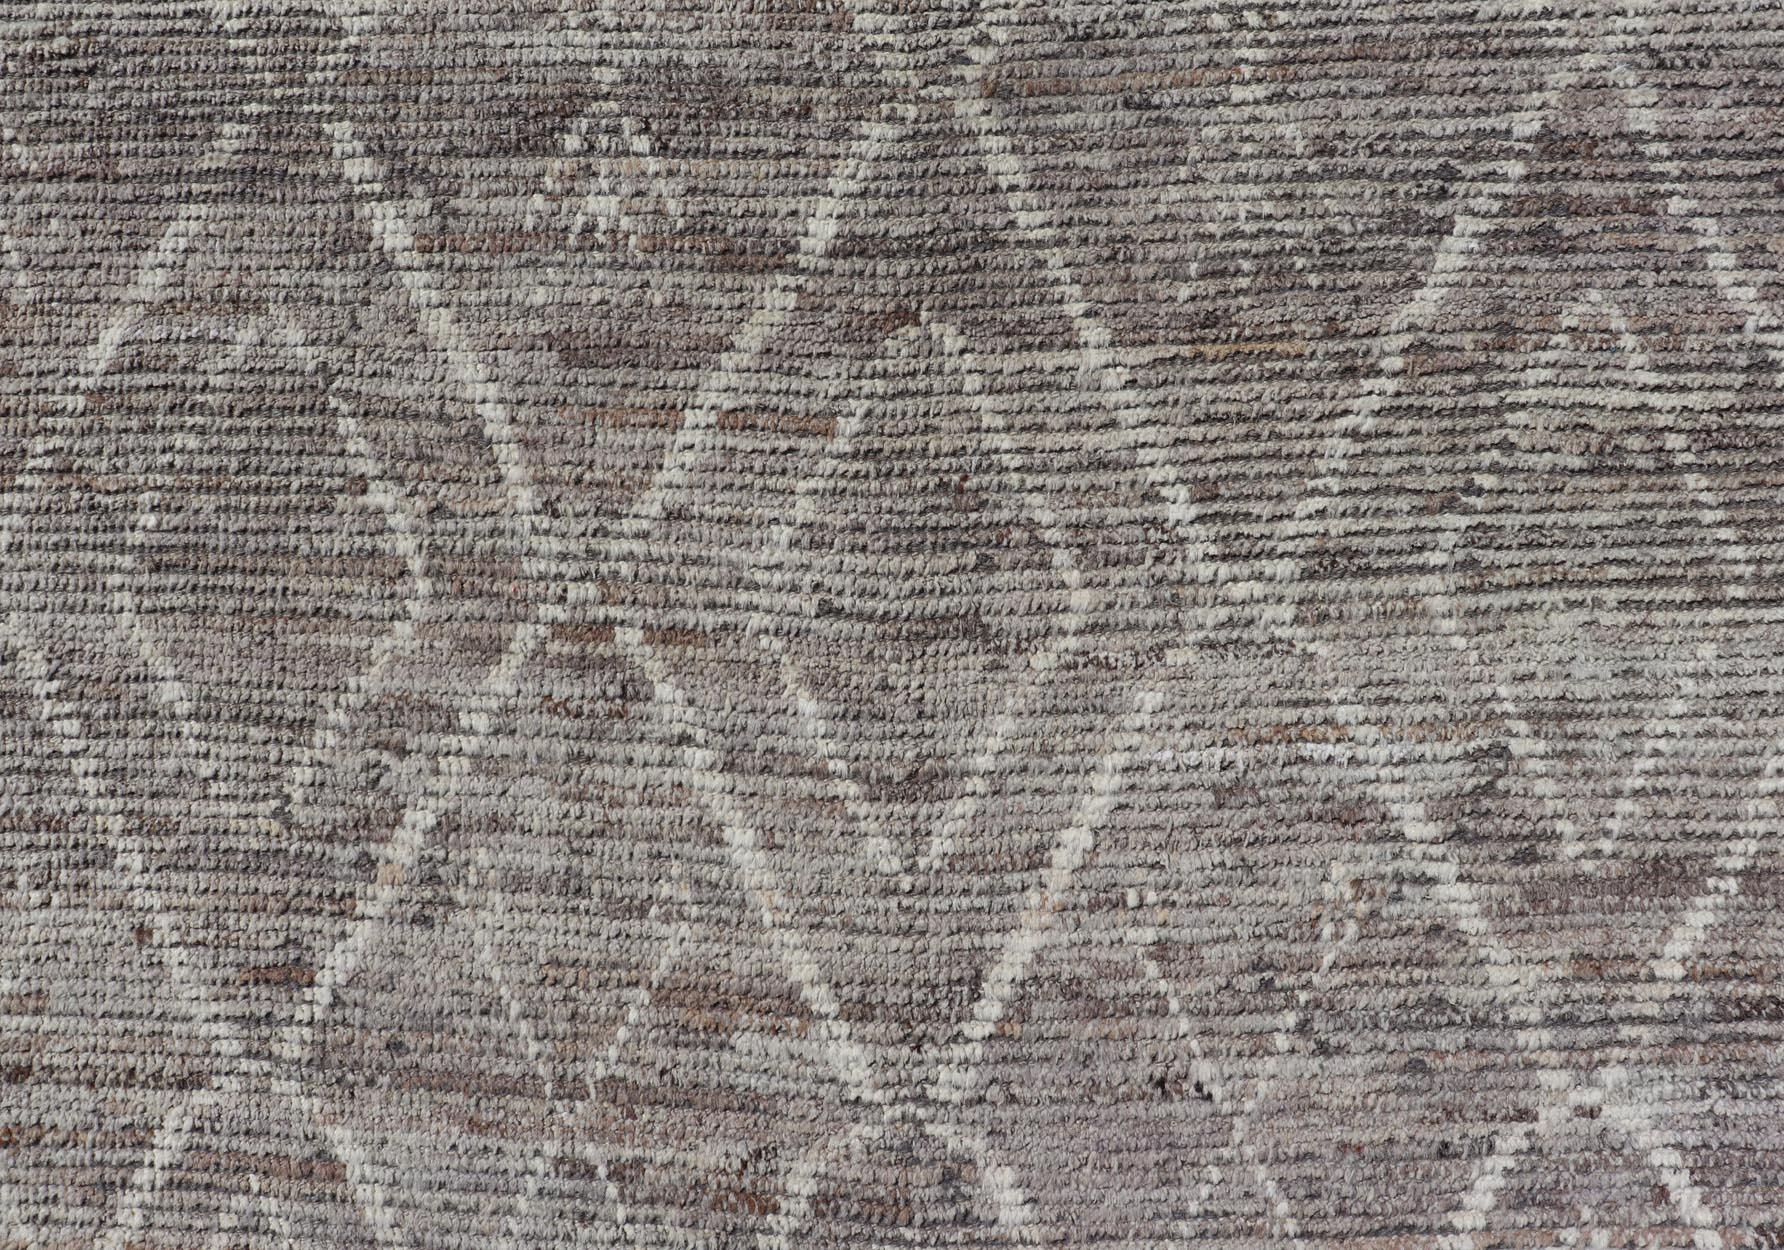 Dieser moderne, legere Teppich ist handgeknüpft. Der Teppich weist ein geometrisches marokkanisches Rautenmuster auf, das mit verschiedenen grauen und cremefarbenen Motiven angereichert ist; dadurch passt dieser Teppich hervorragend zu einer